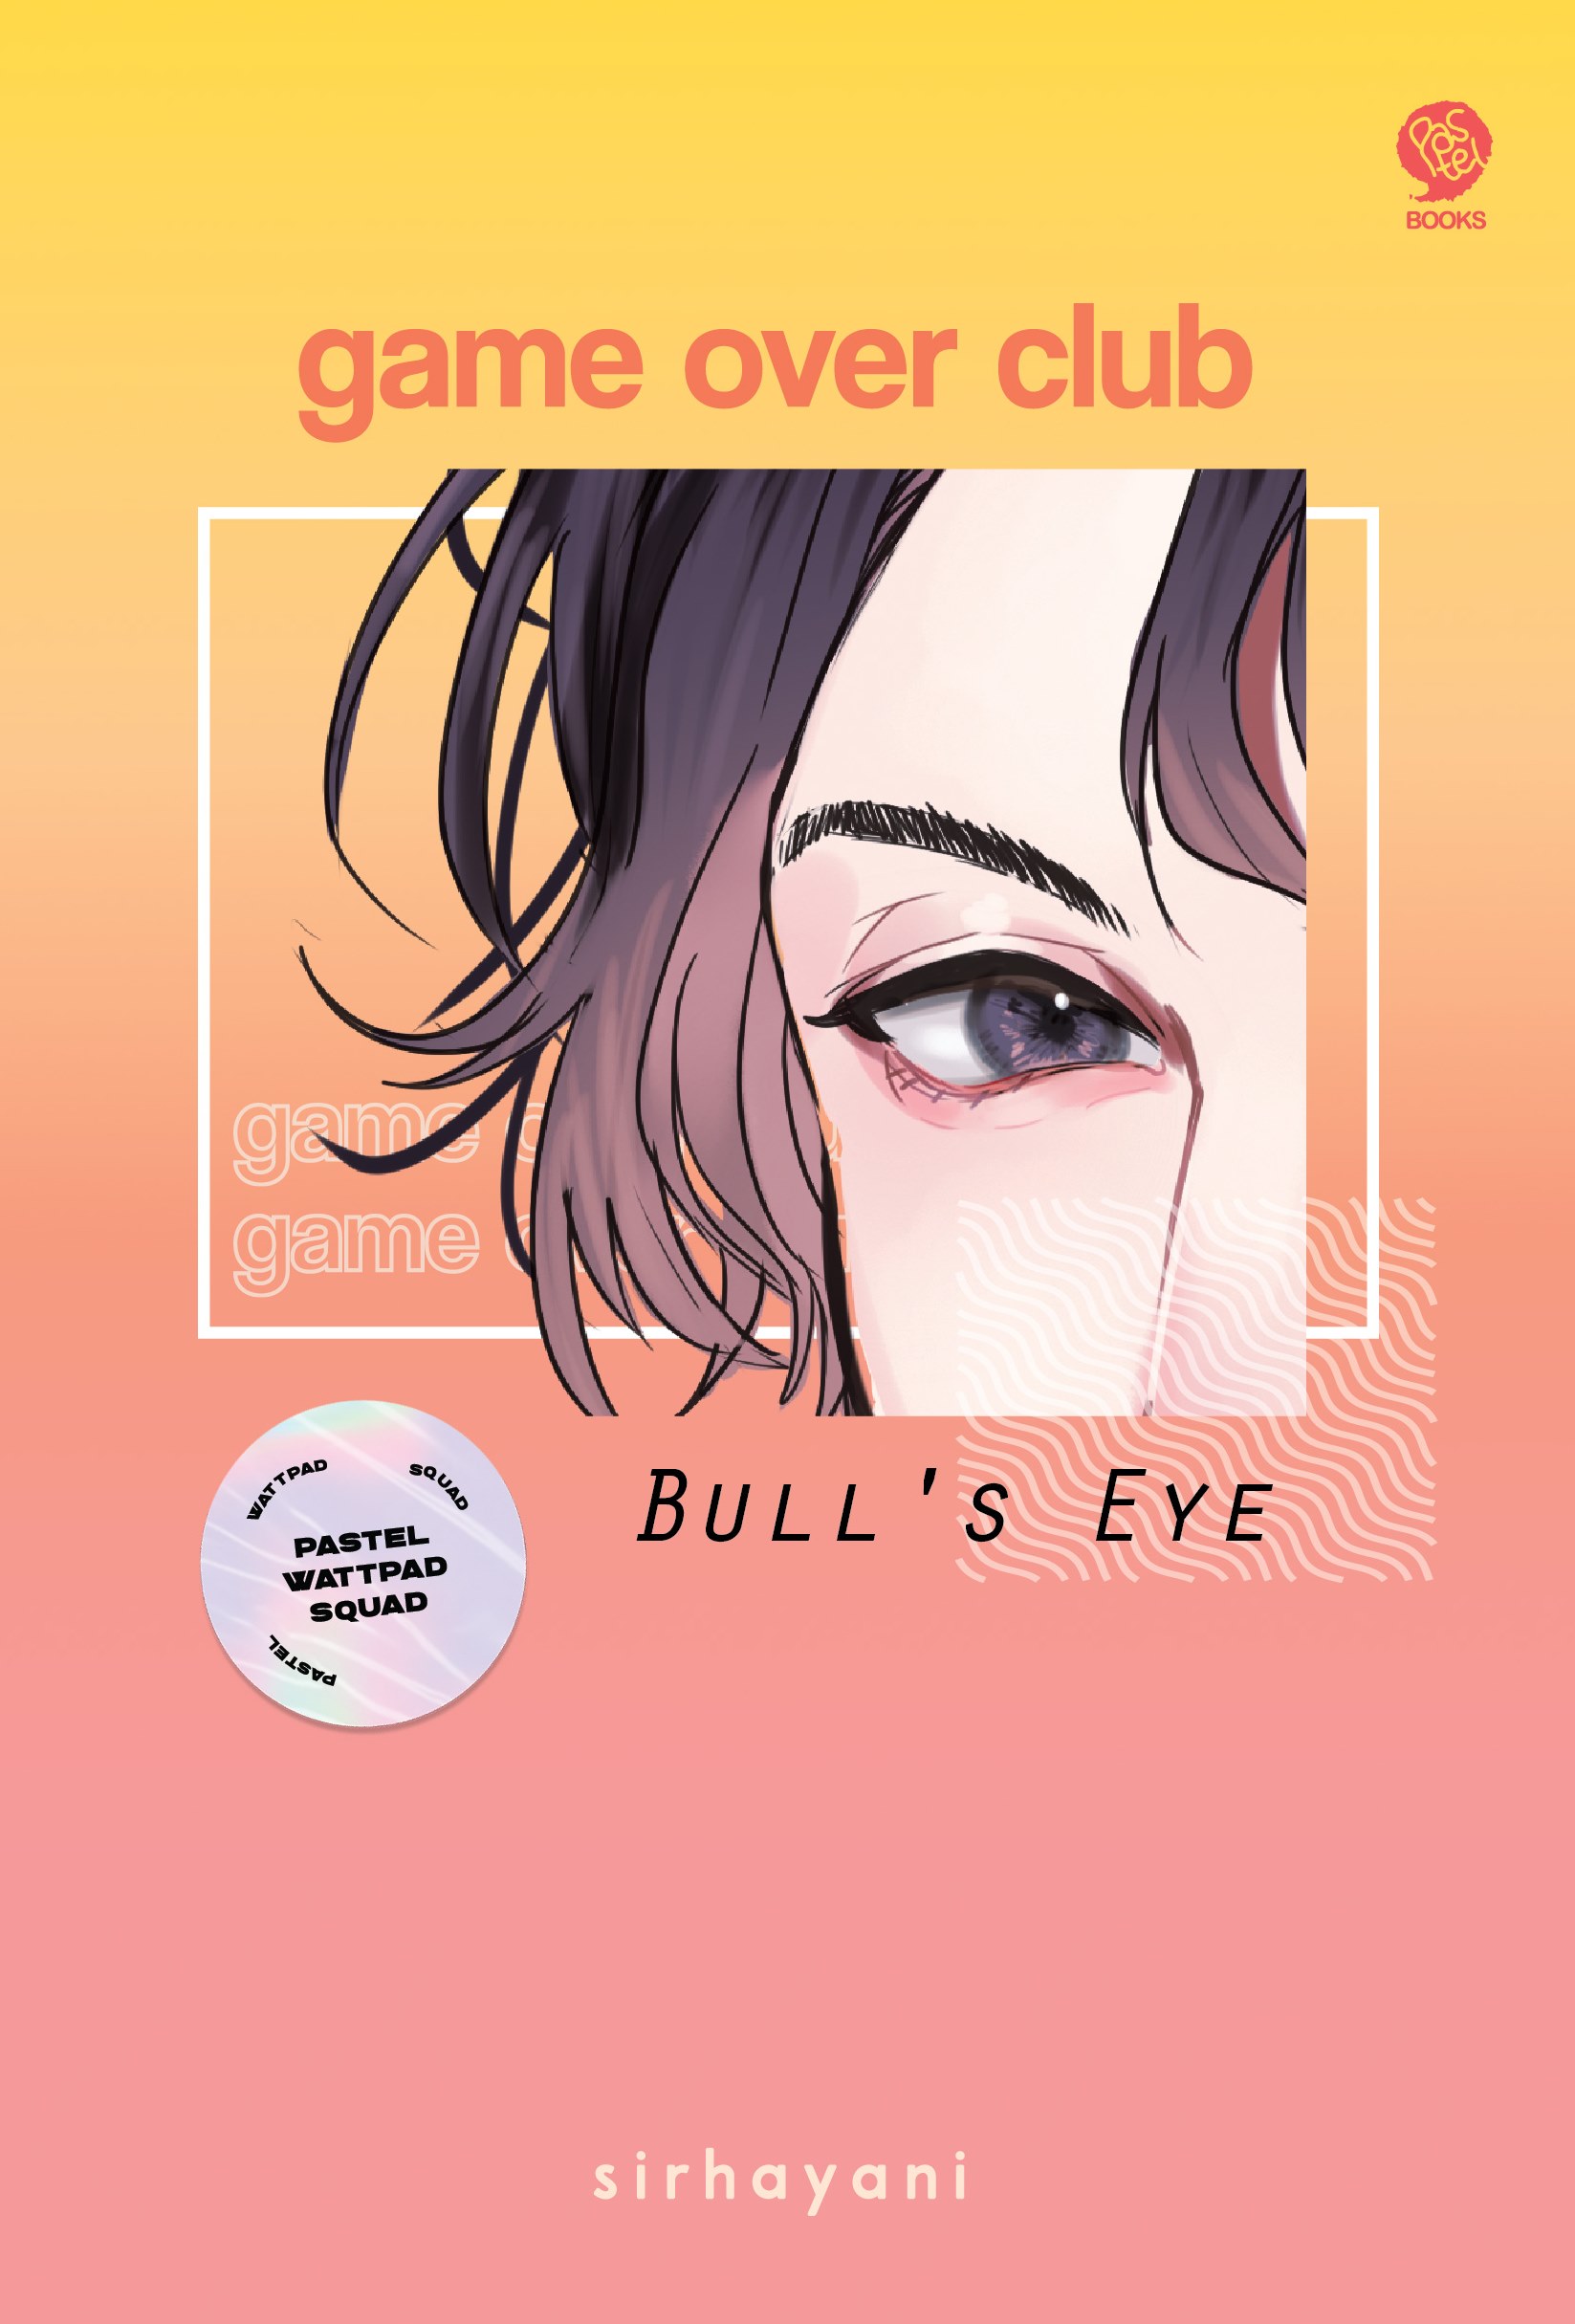 Game over club bull's eye